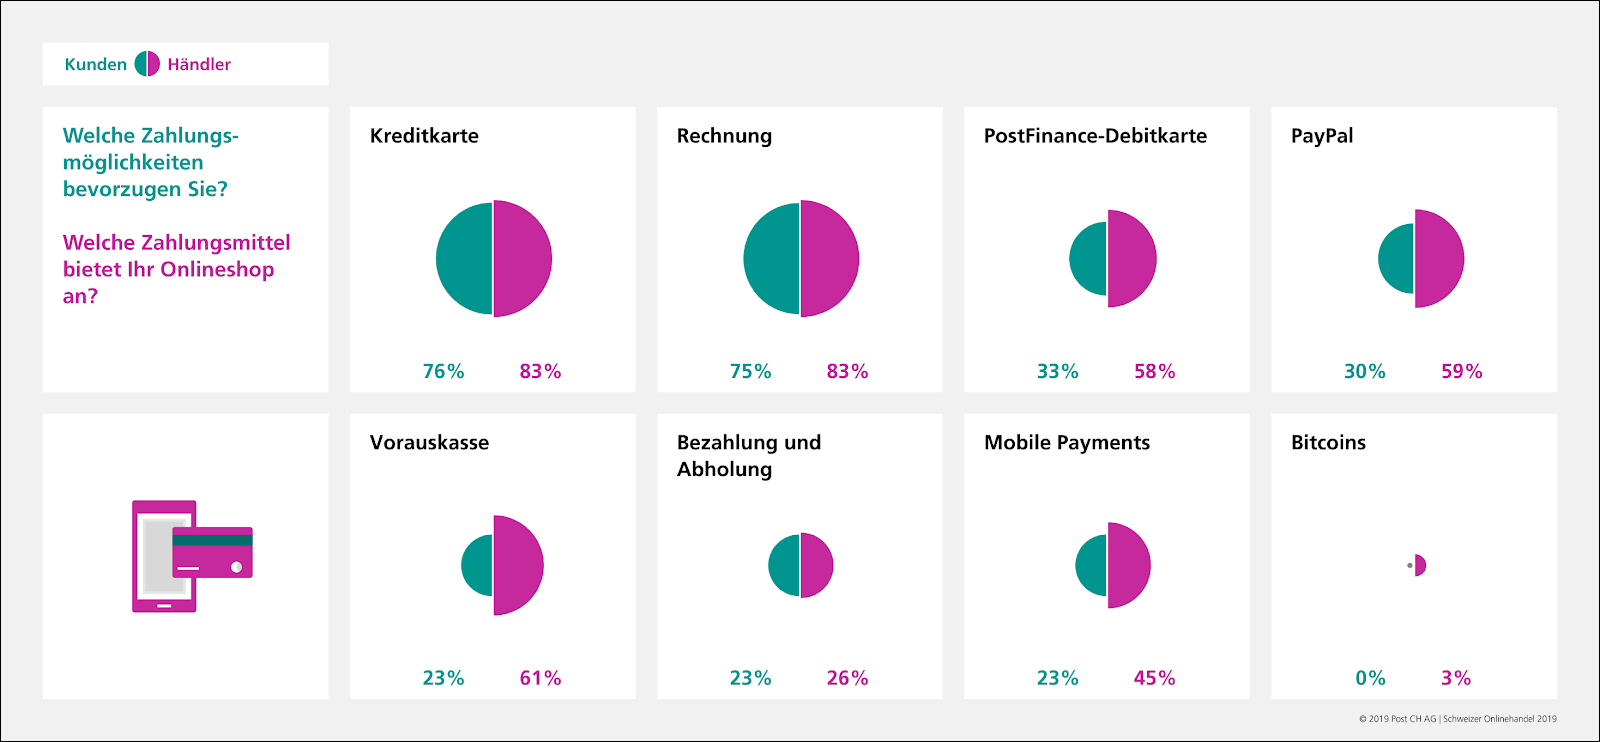 Übersicht der Zahlungsmethoden in der Schweiz